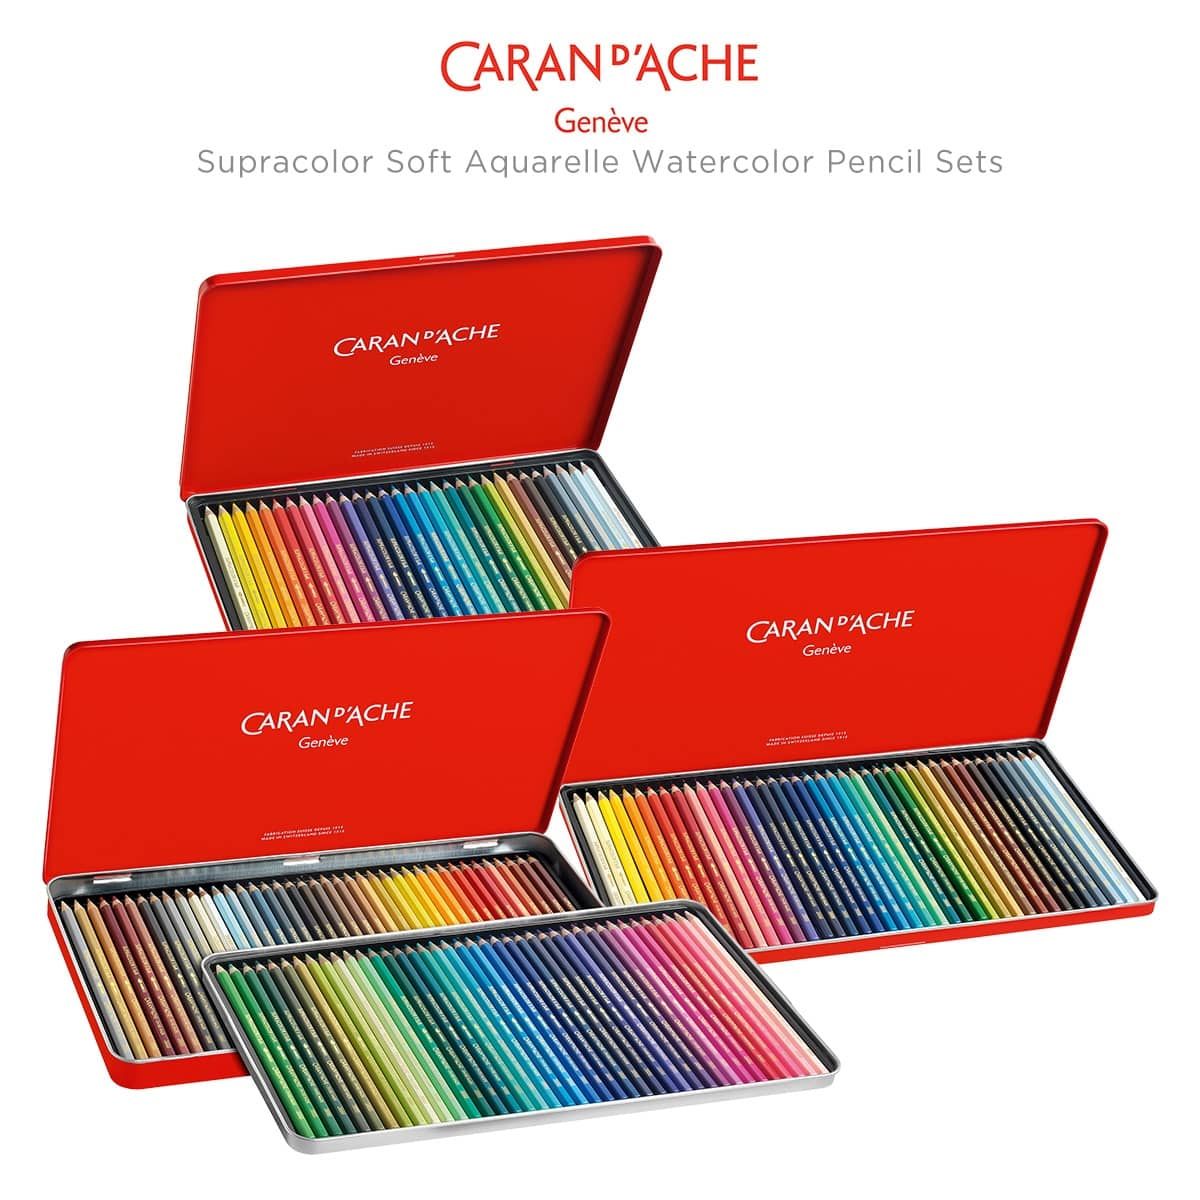 Caran D'Ache Supracolor Soft Aquarelle Watercolor Pencil Red Tin Sets